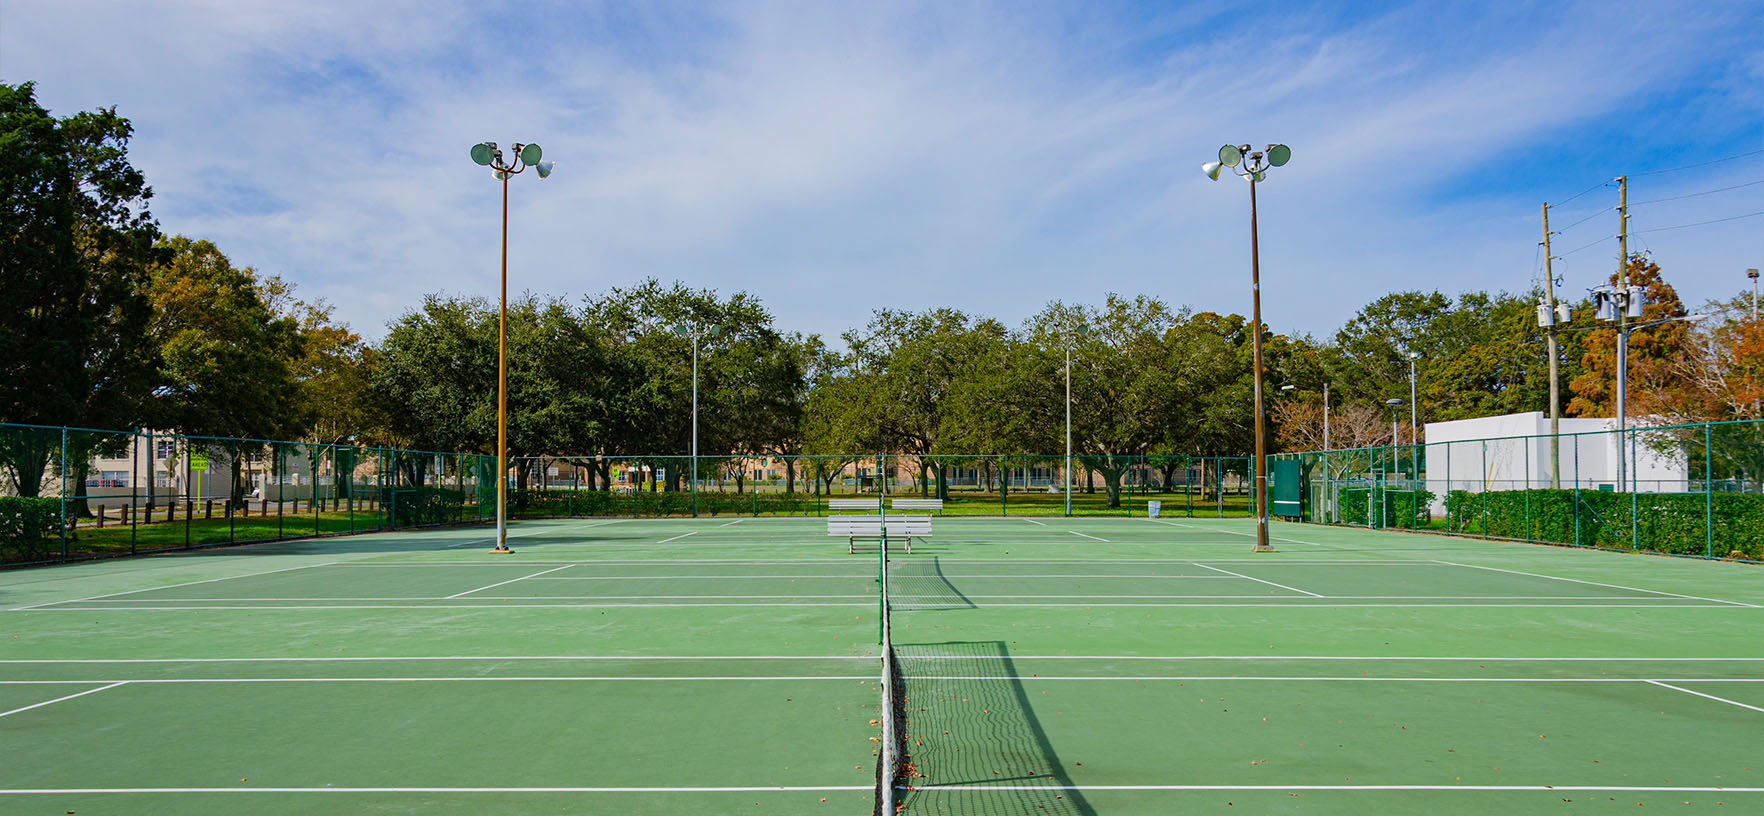 Campbell Park outdoor tennis court